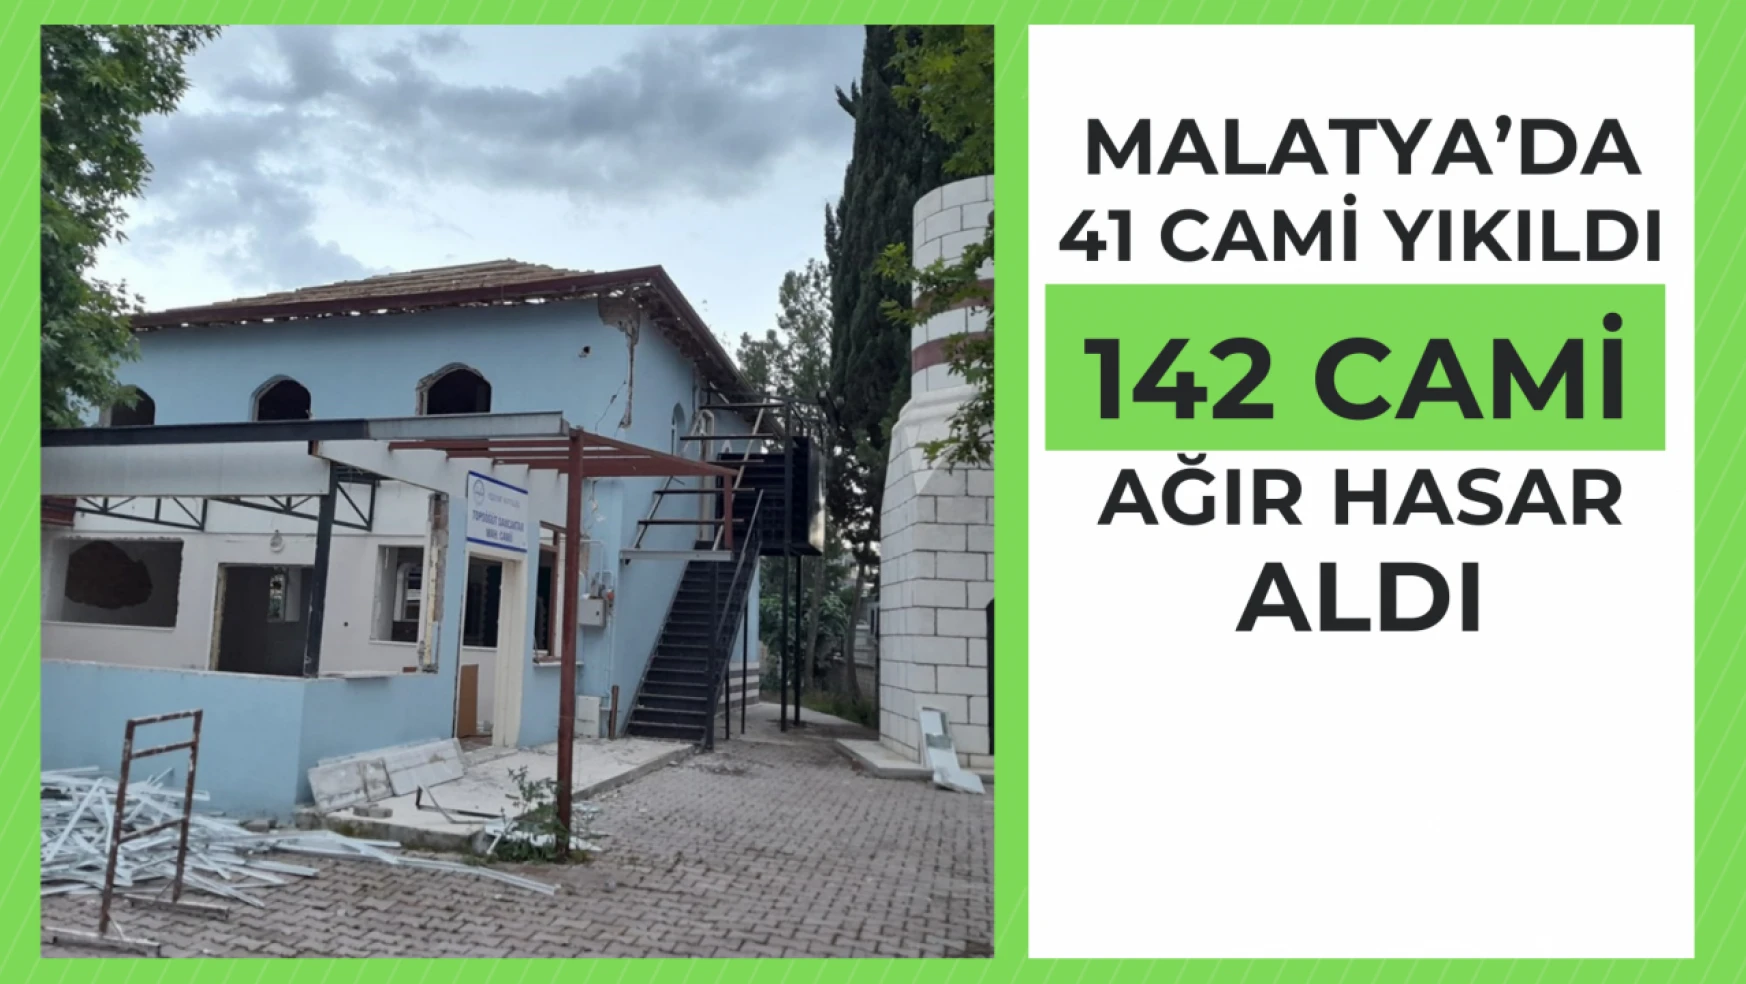 Malatya'da 41 cami yıkıldı, 142 cami ise ağır hasar aldı